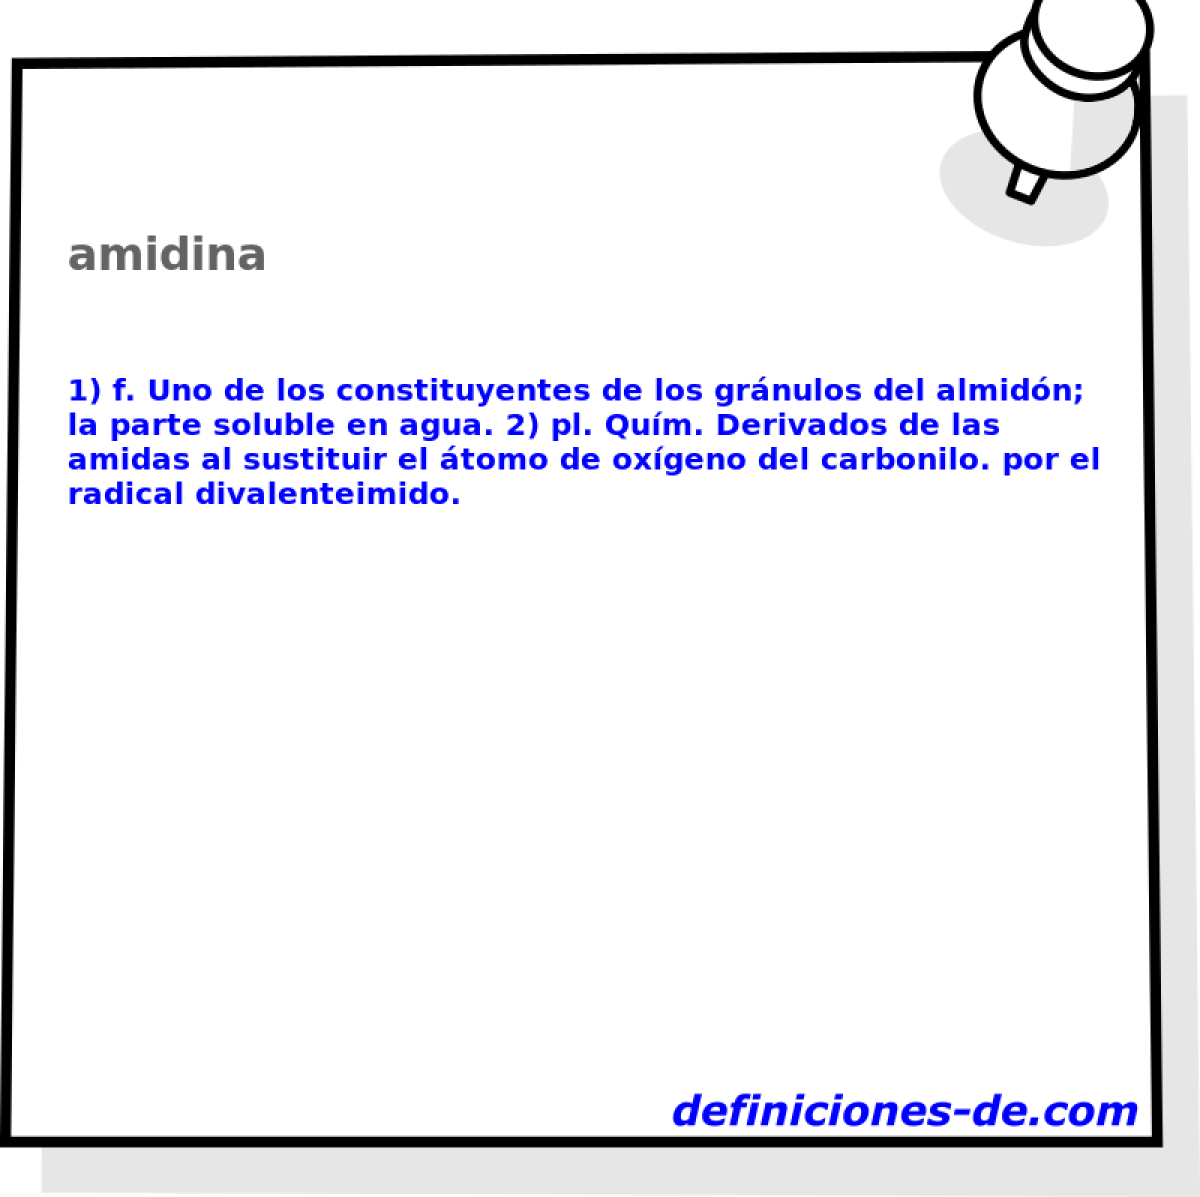 amidina 